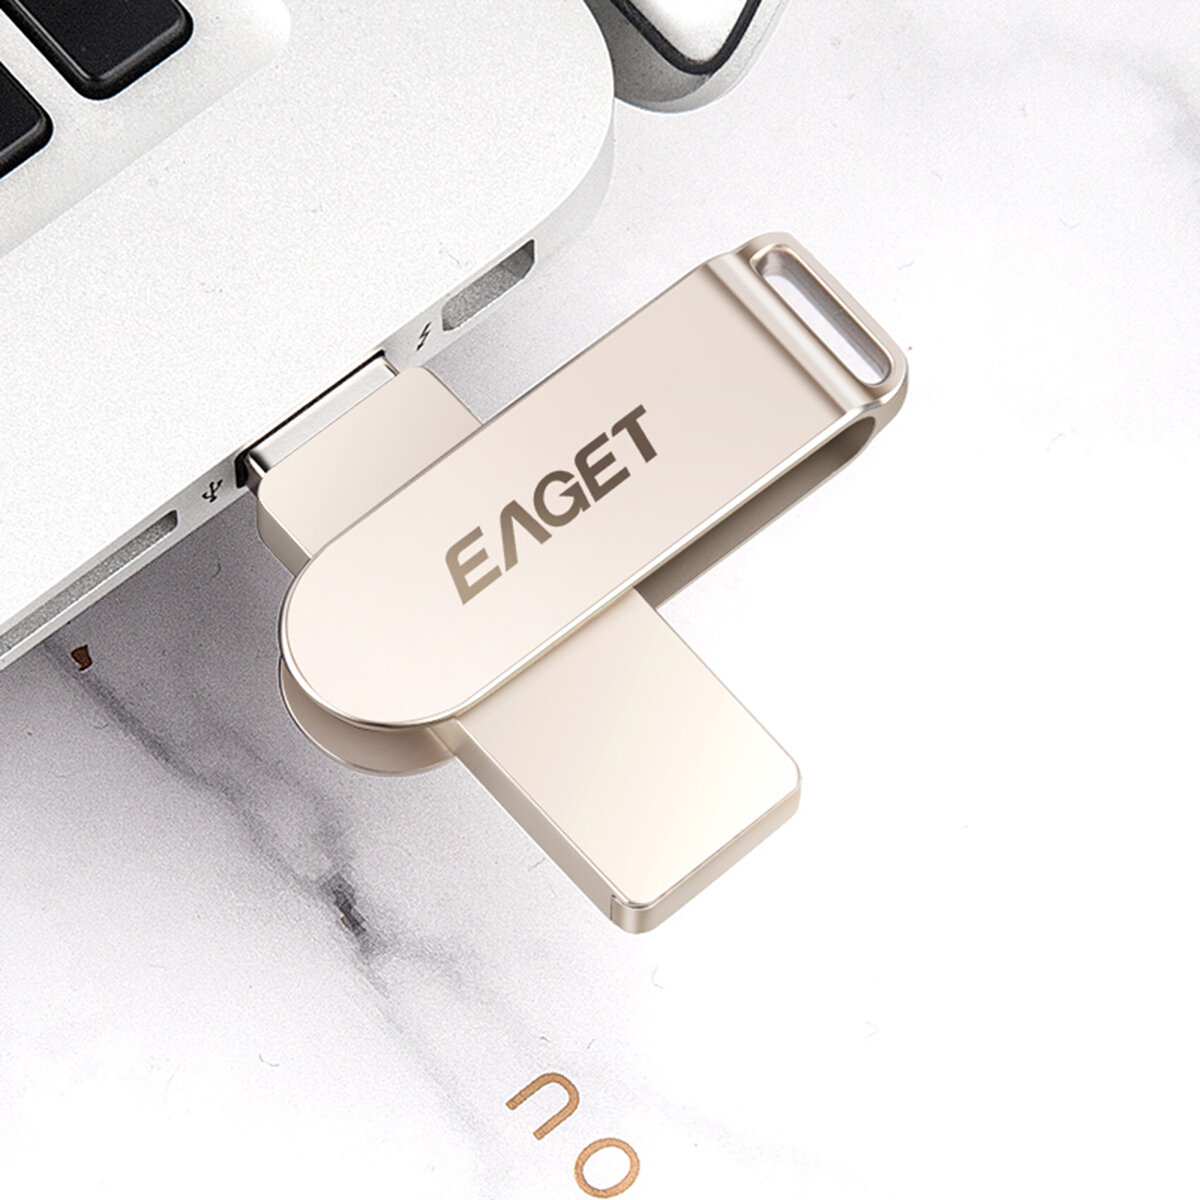 EAGET F60 128G USB 3.0高速USB FlashドライブペンドライブUSBディスク